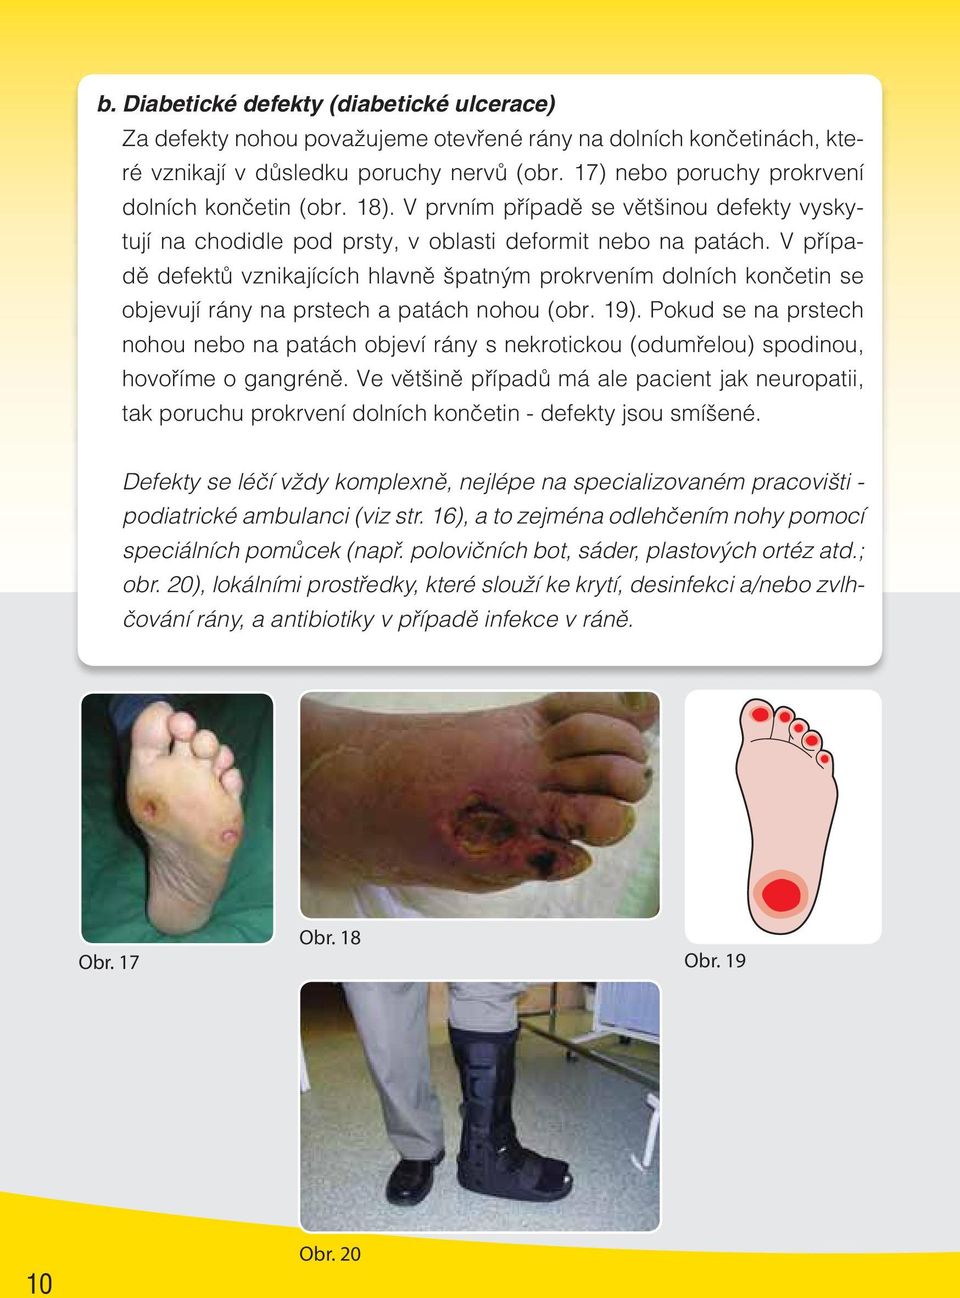 V případě defektů vznikajících hlavně špatným prokrvením dolních končetin se objevují rány na prstech a patách nohou (obr. 19).